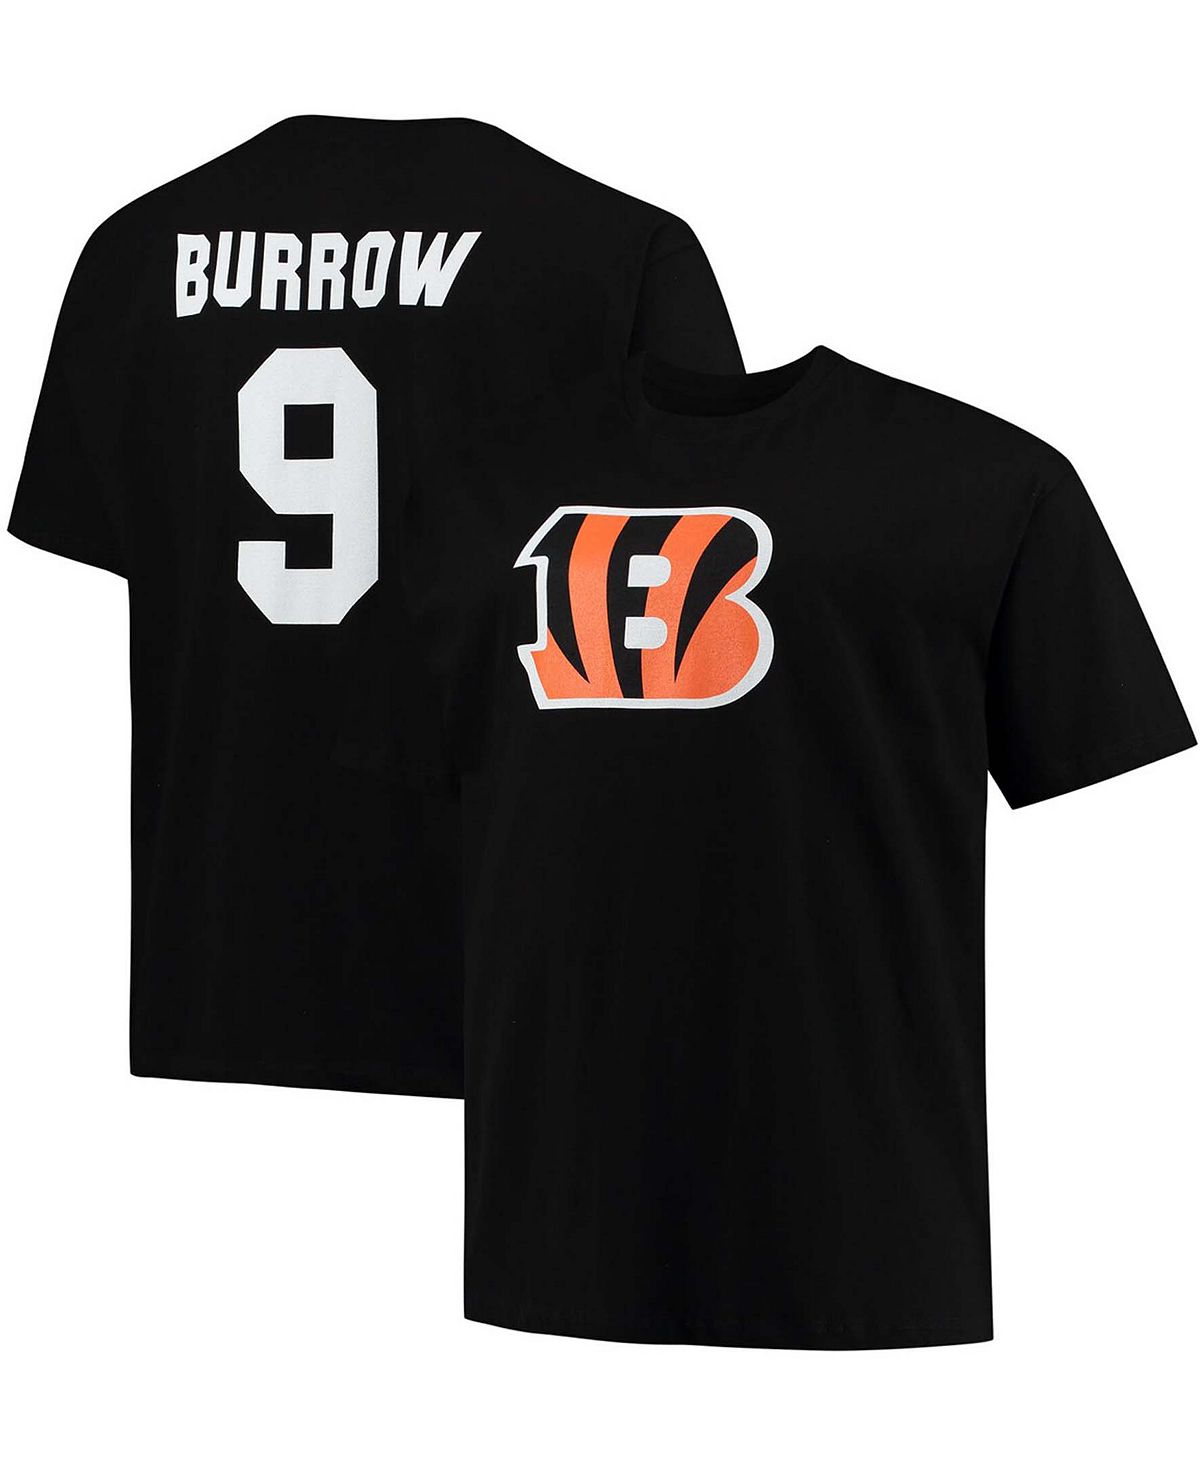 Мужская черная футболка Big and Tall Joe Burrow Cincinnati Bengals с именем игрока и номером Fanatics